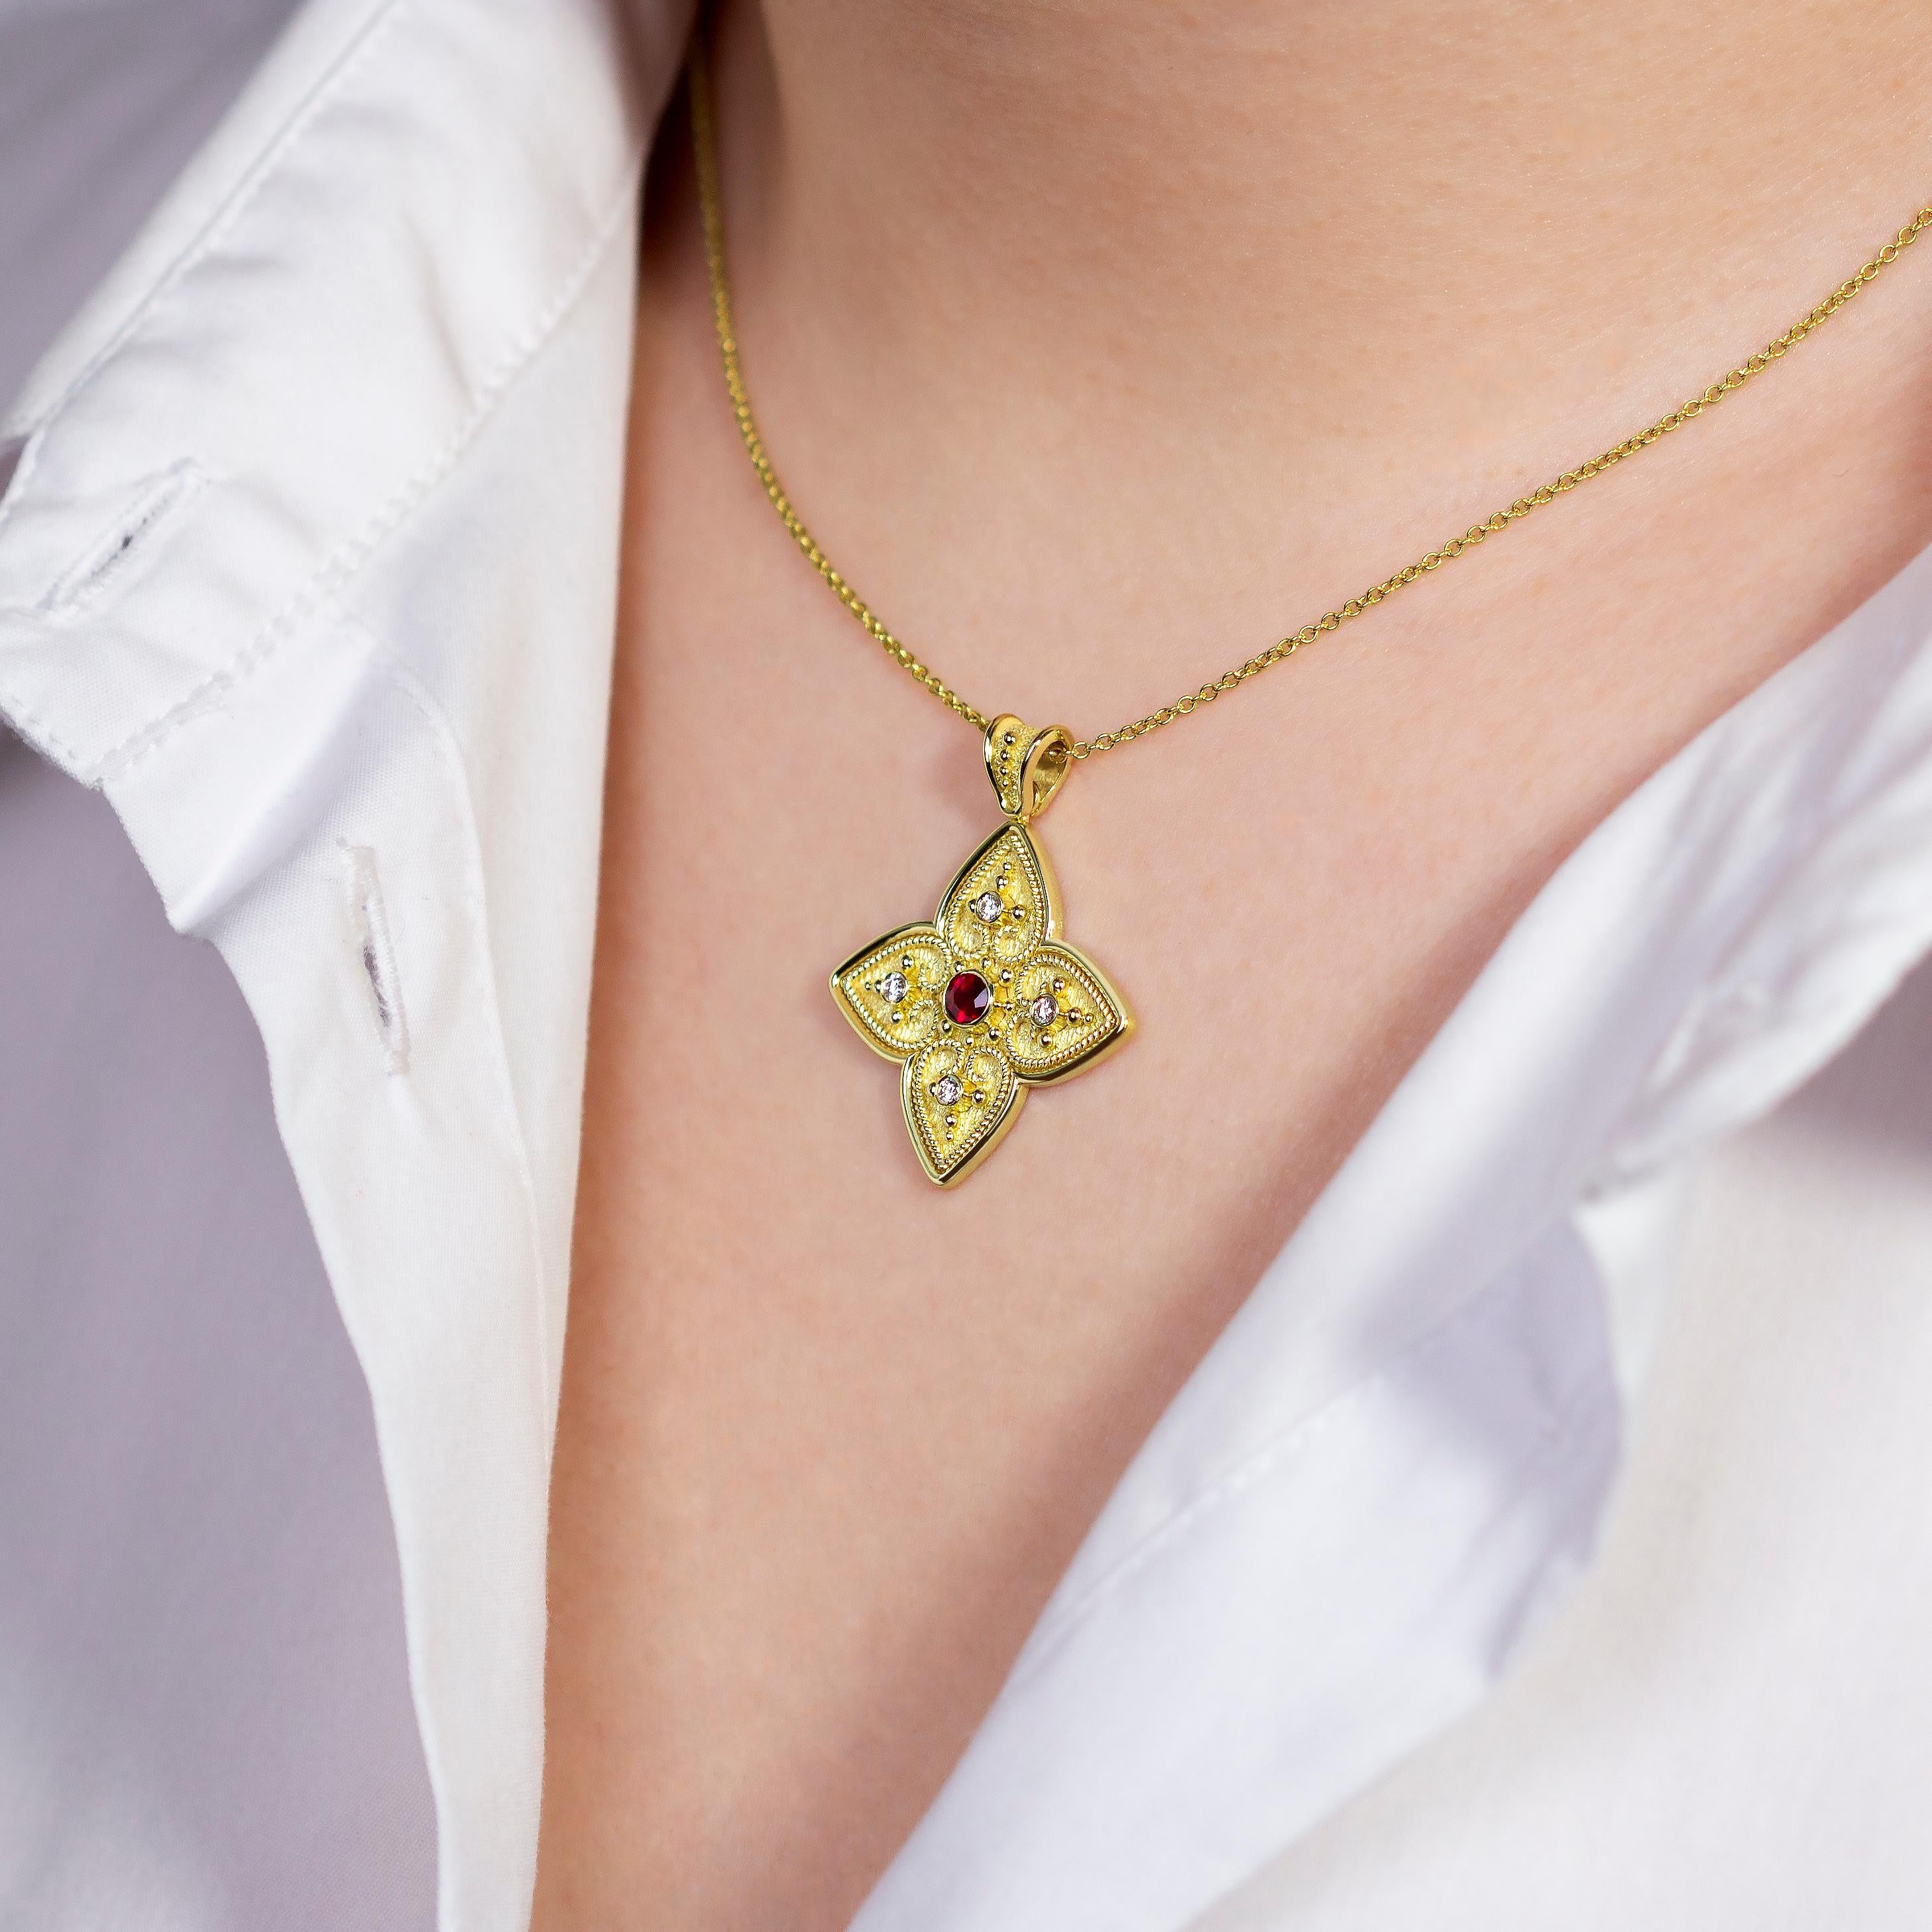 Unser einzigartiger Kreuzanhänger aus Gold erblüht mit einem bezaubernden Blumendesign, bei dem herzförmige Blütenblätter jeweils einen einzelnen Diamanten umschließen, der von einem strahlenden Rubin umgeben ist. Ein Symbol der Liebe und des